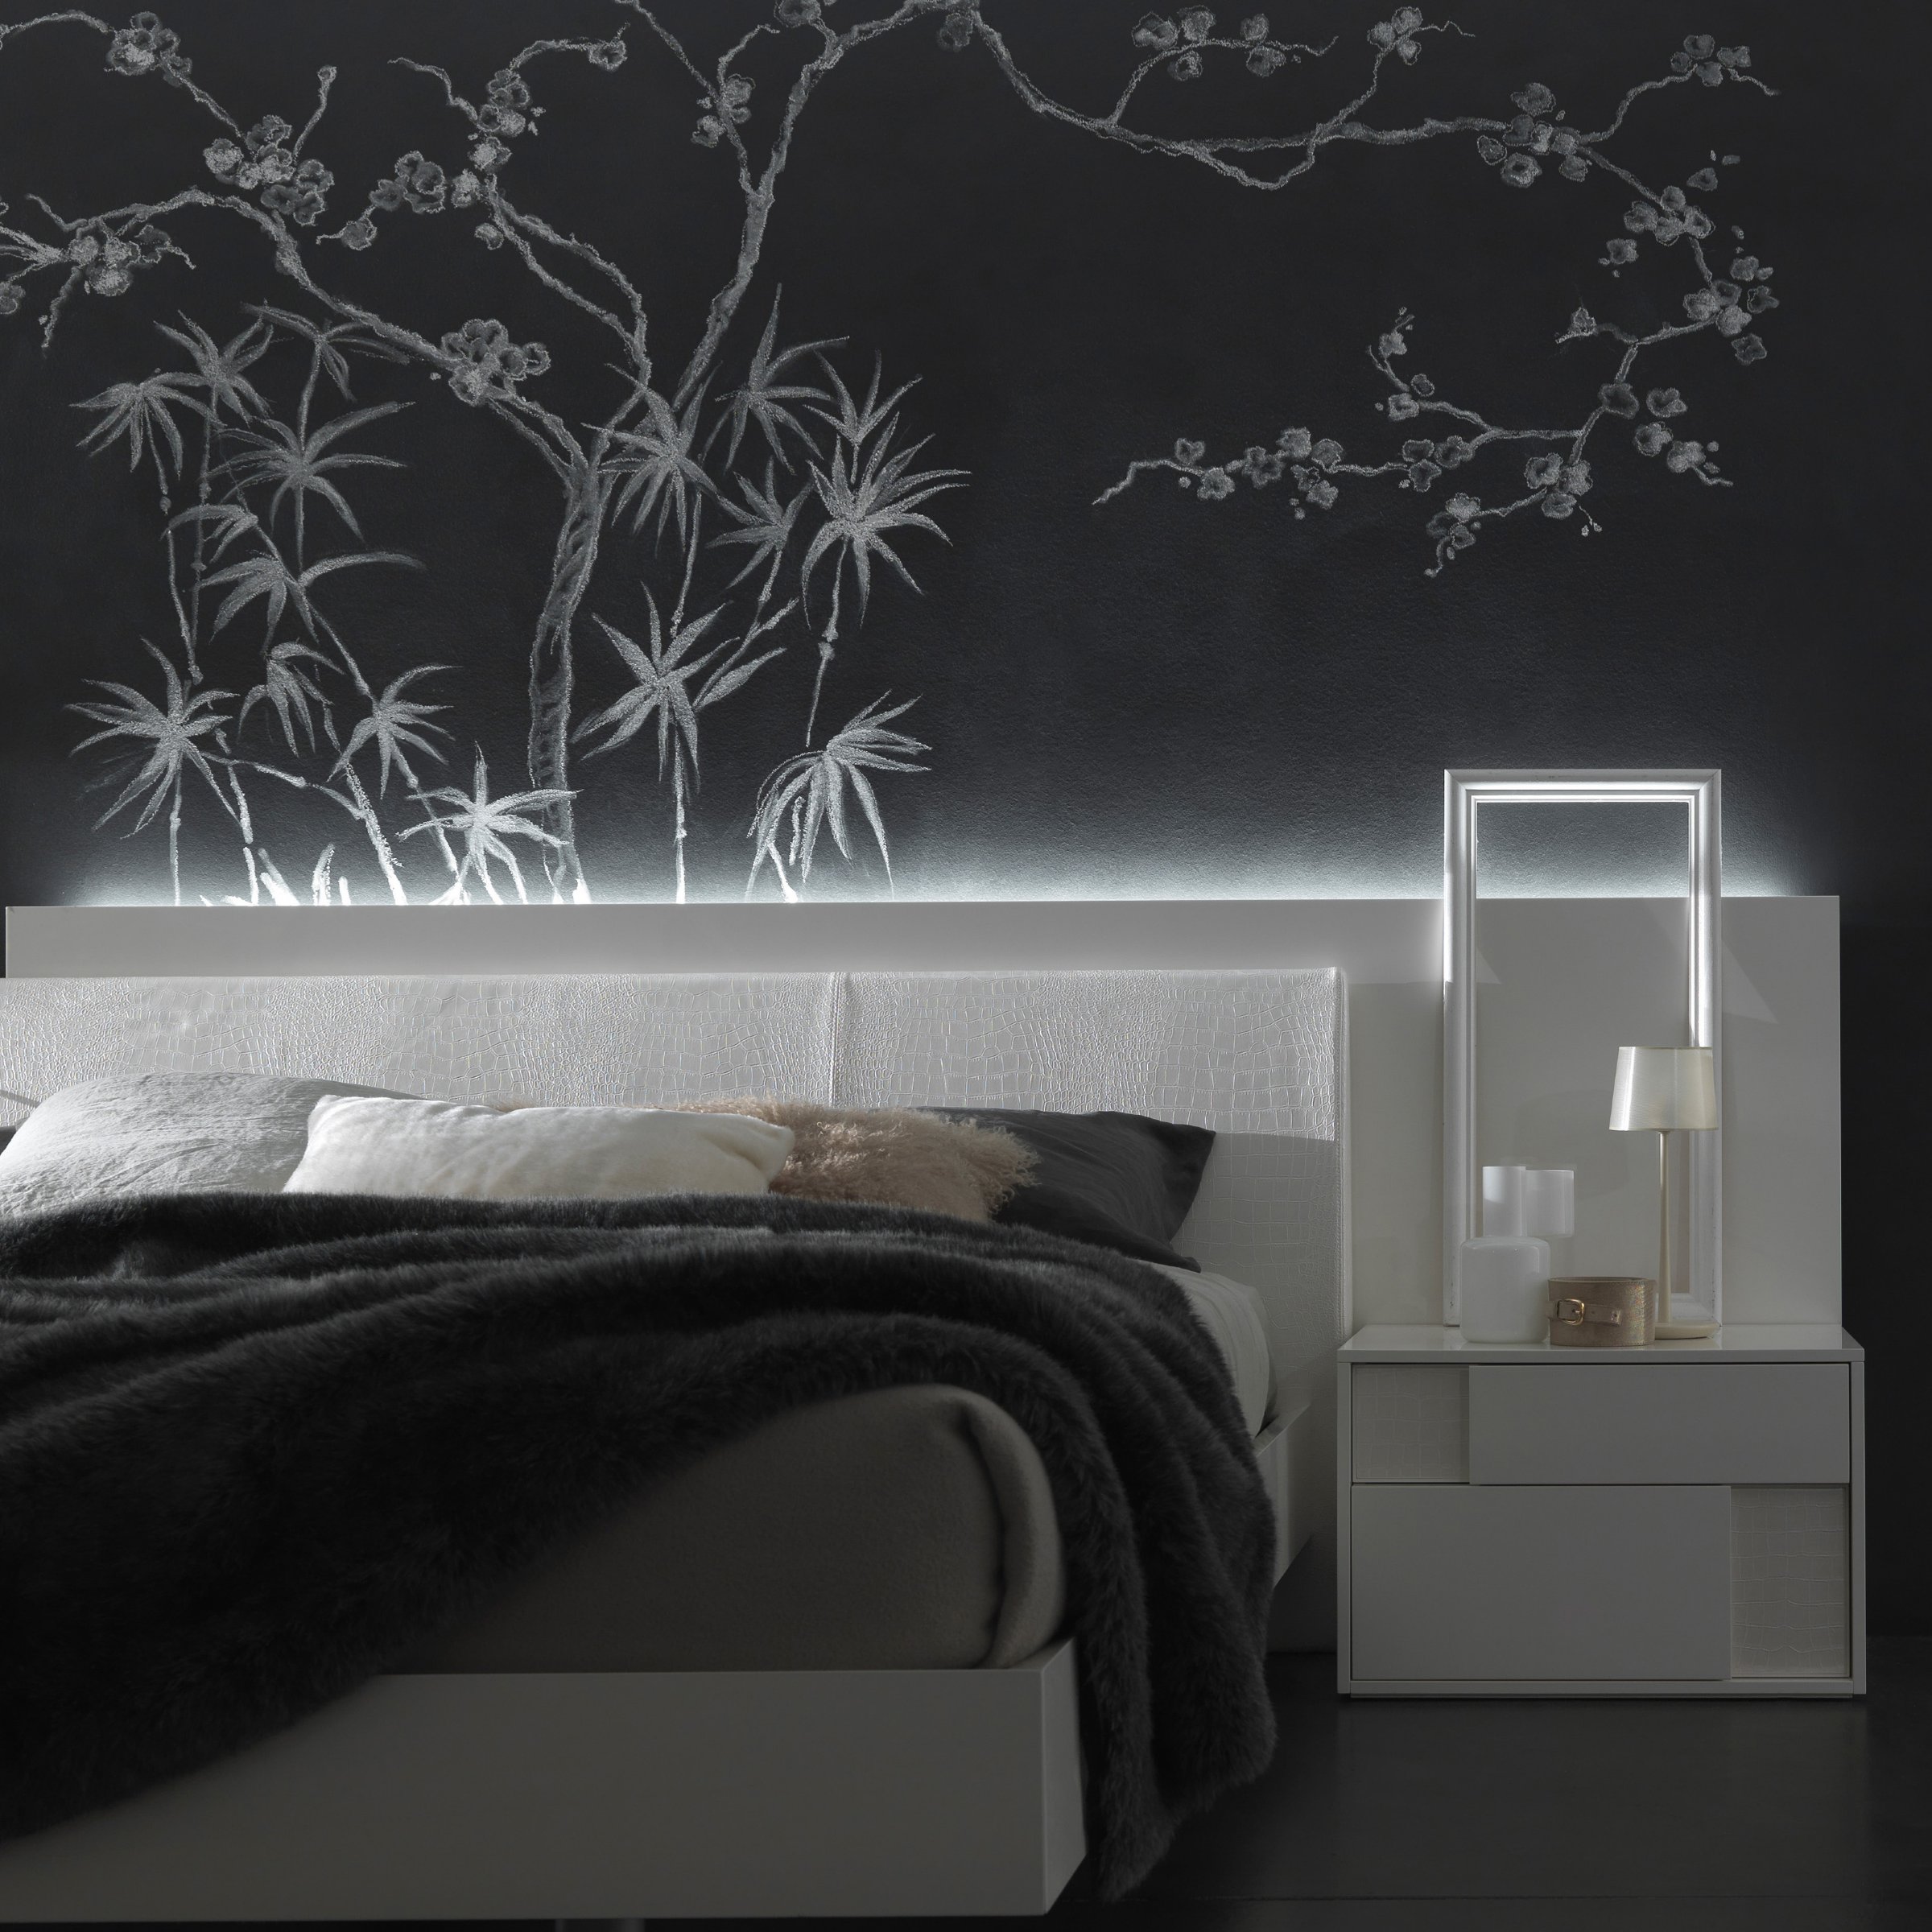 Стильный дизайн чёрно-белого интерьера спальни